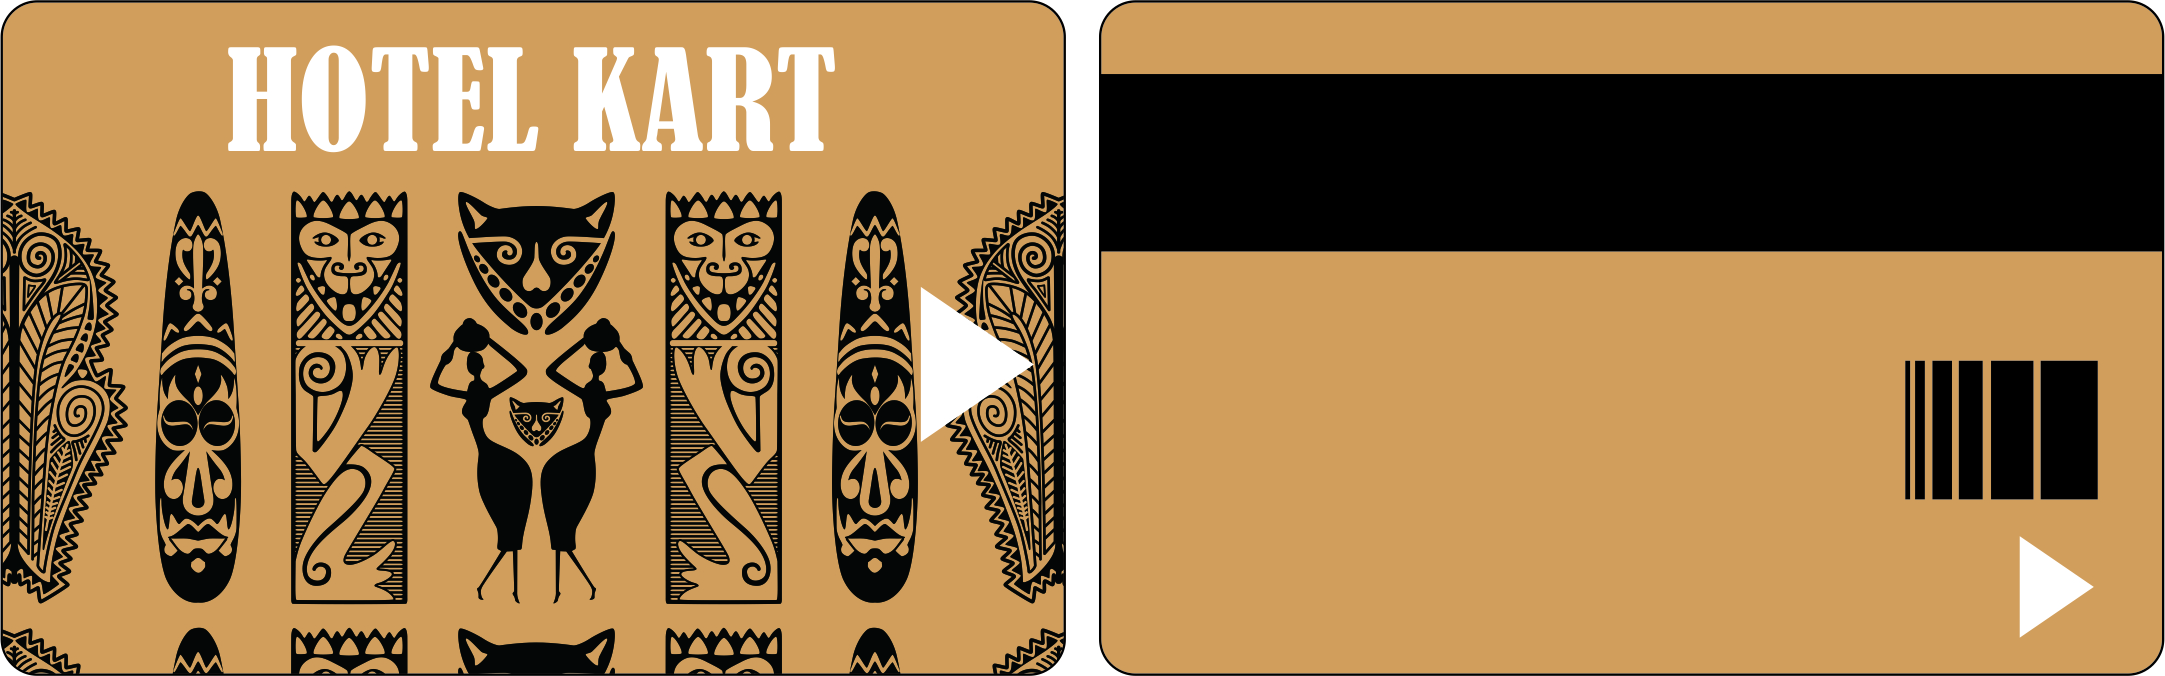 MIFARE kartları, NXP tarafından geliştirilen temassız ürünlerin bir markasıdır